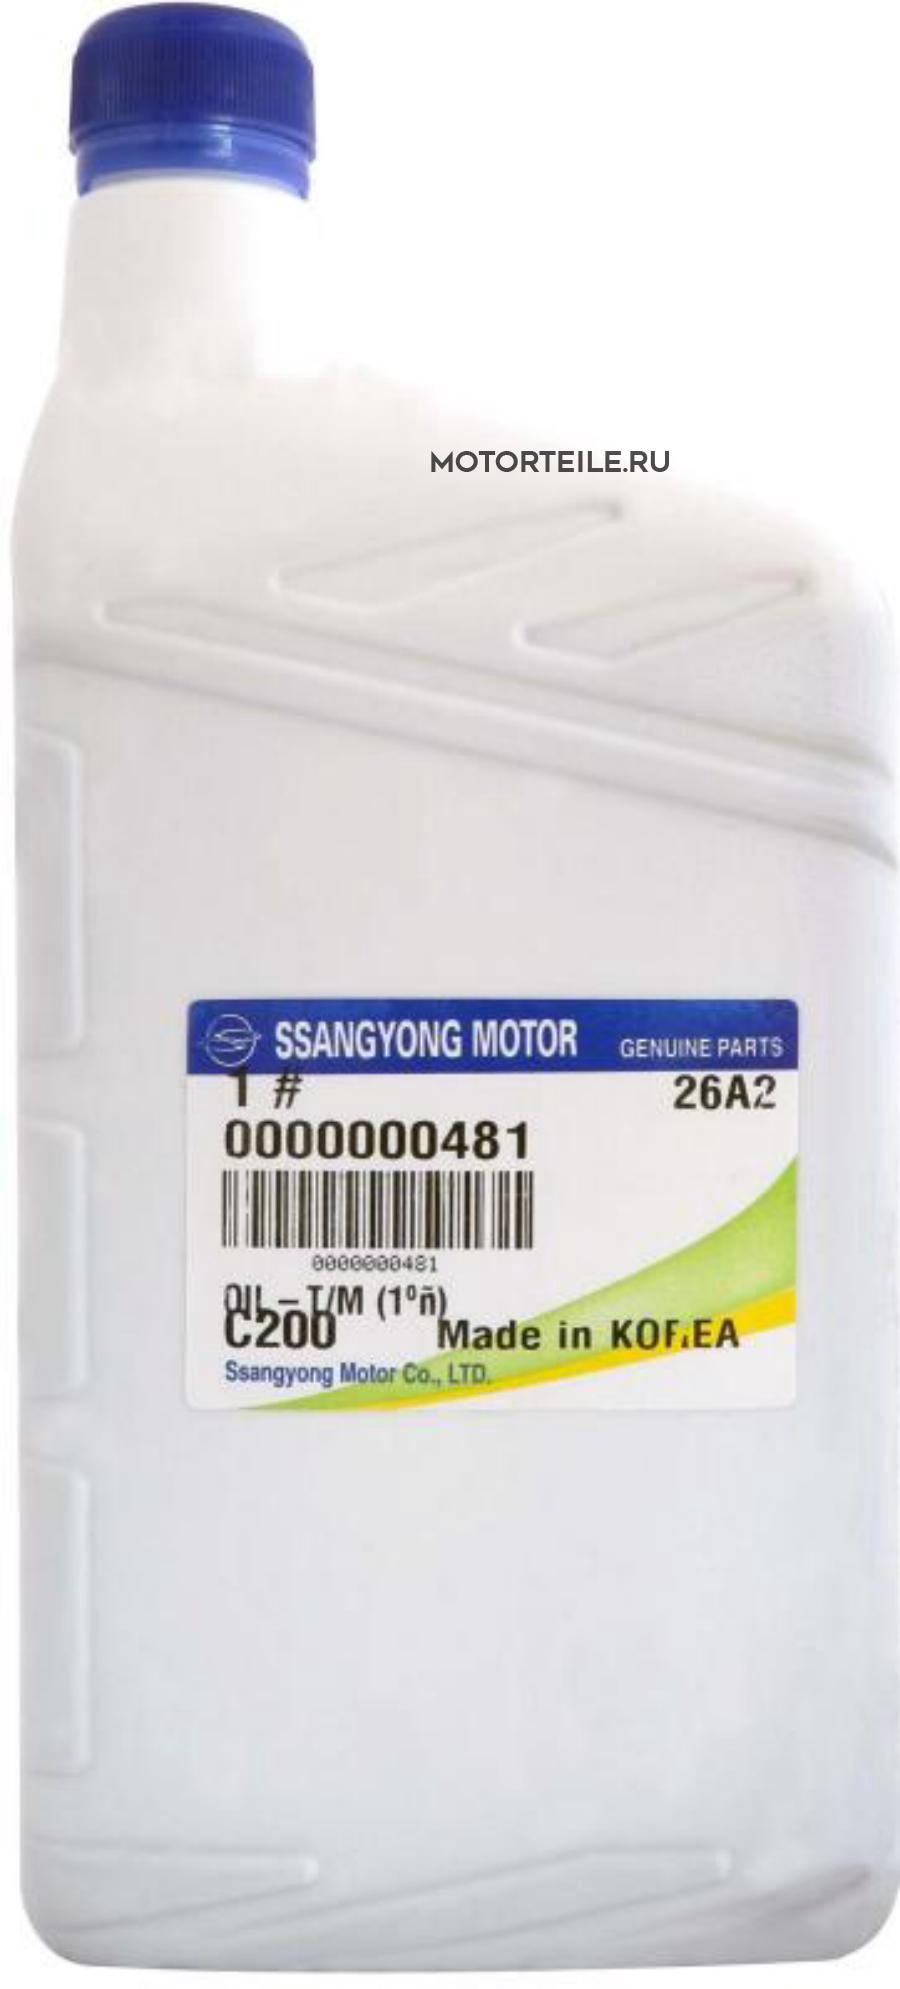  Трансмиссионное масло SsangYong SAE 75W-85 GL-4   1л.   